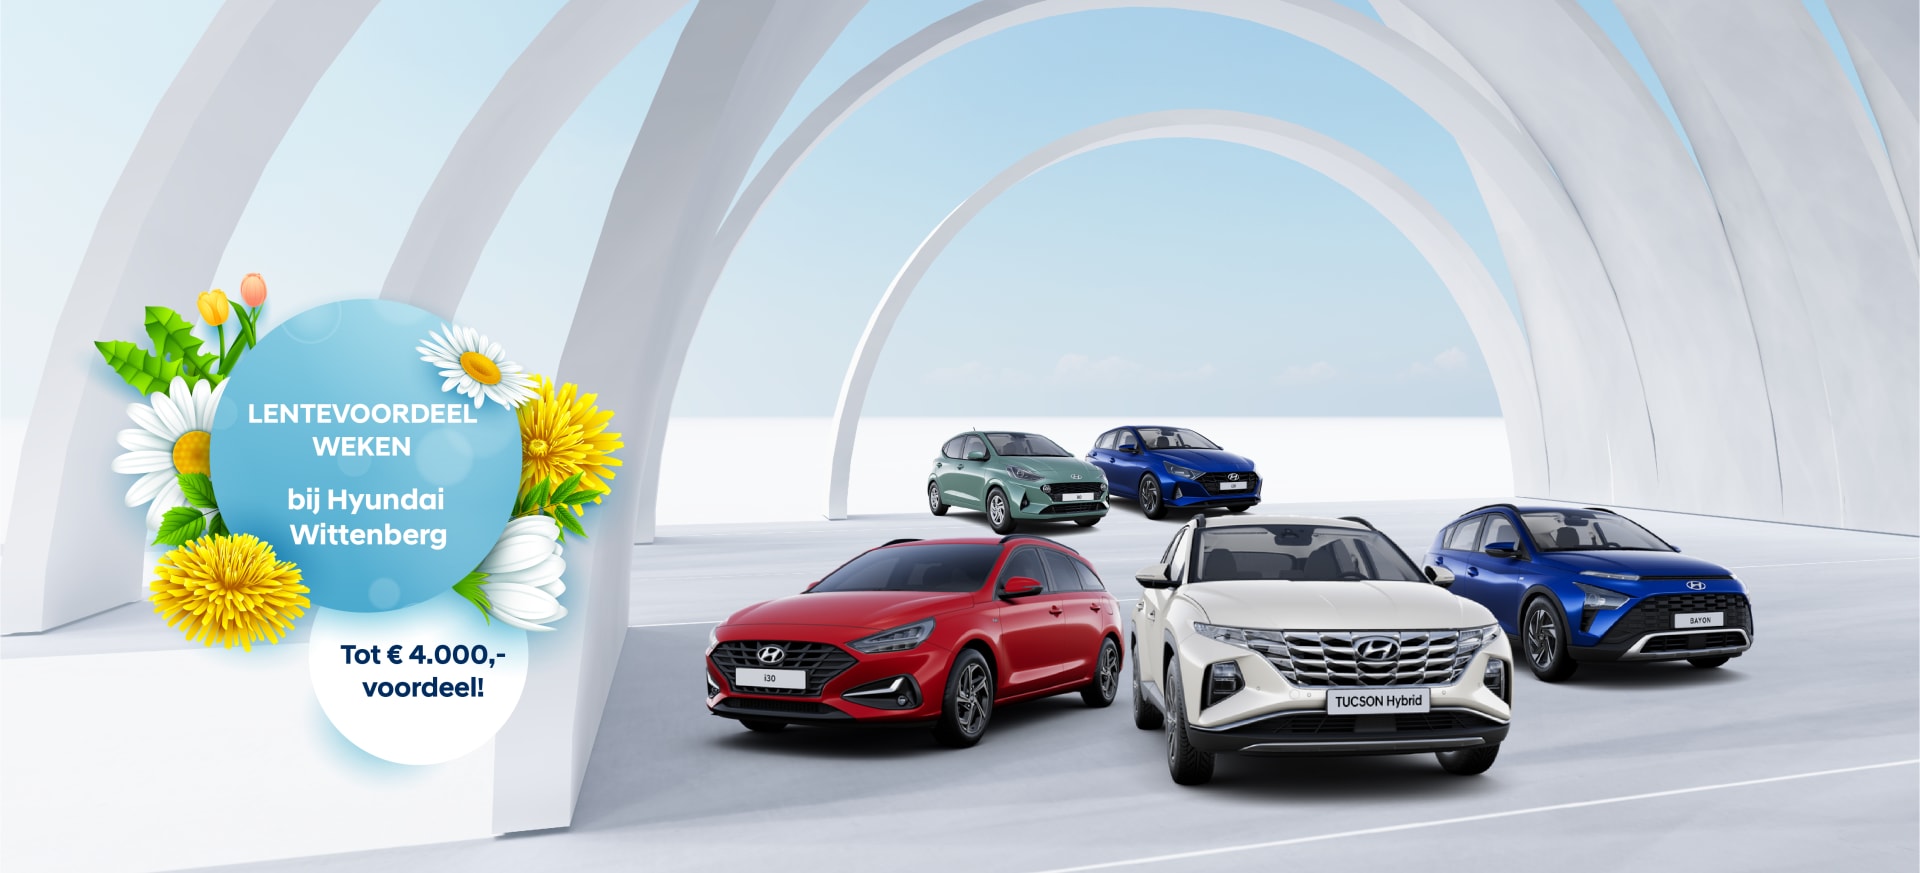 Lentevoordeel weken - Hyundai Wittenberg